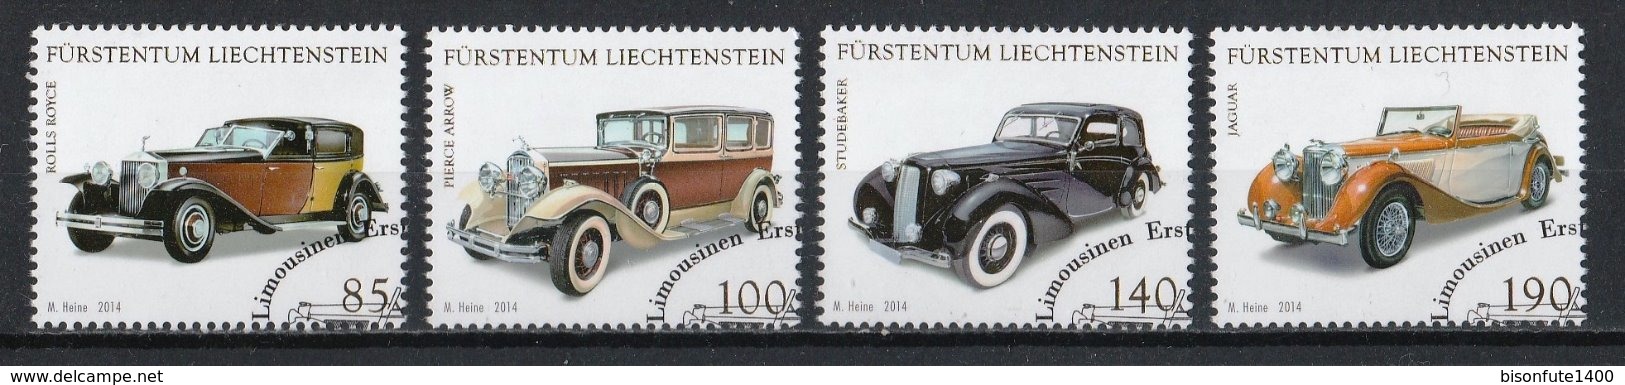 Liechtenstein 2014 : Timbres Yvert & Tellier N° 1666 - 1667 - 1668 Et 1669 Avec Oblit. Rondes. - Usati